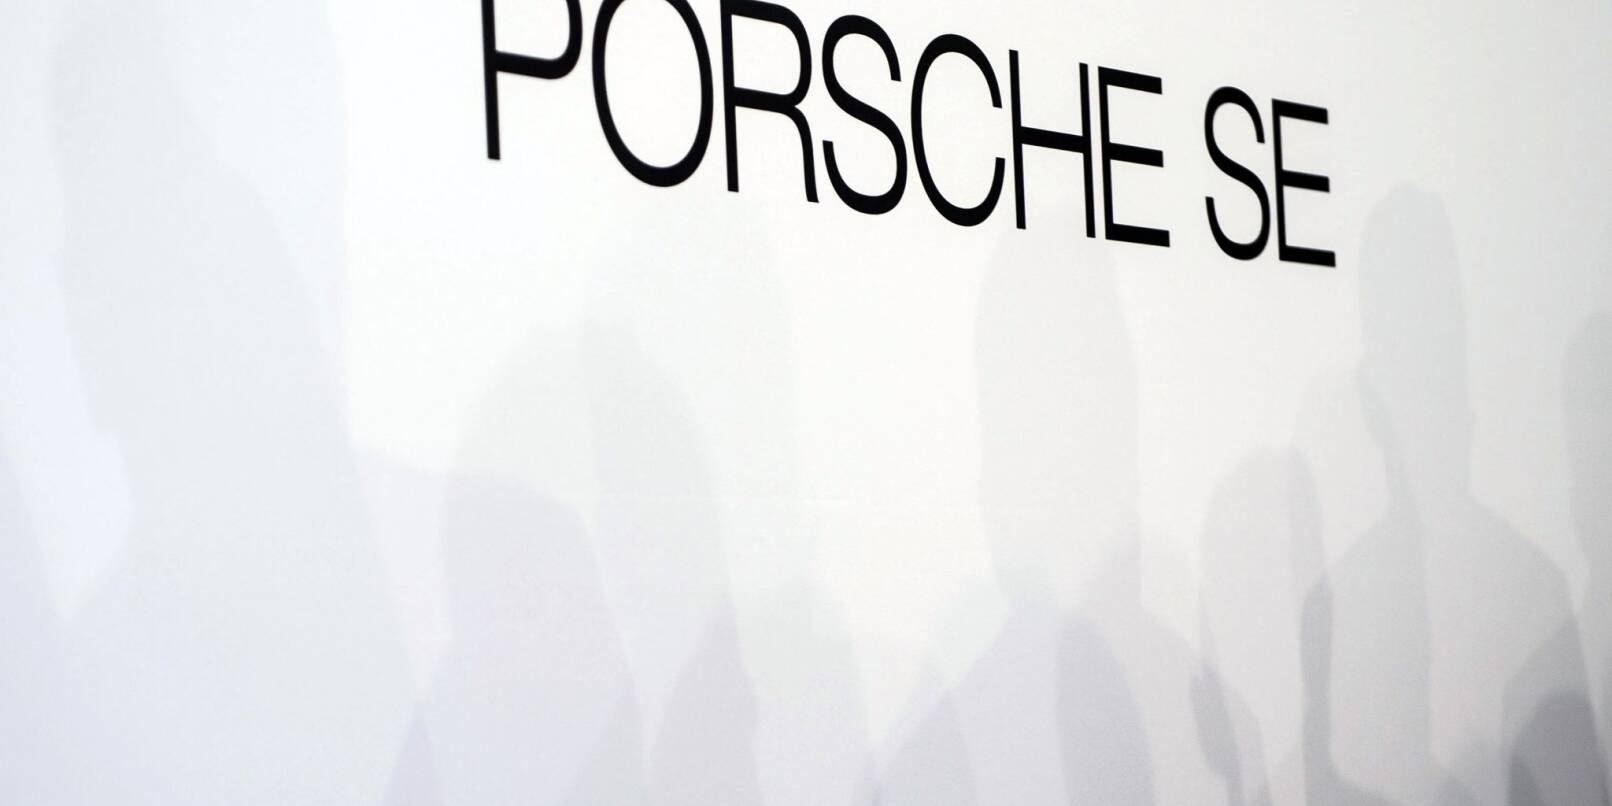 Der Schriftzug der Porsche SE ist auf einer Wand zu sehen.